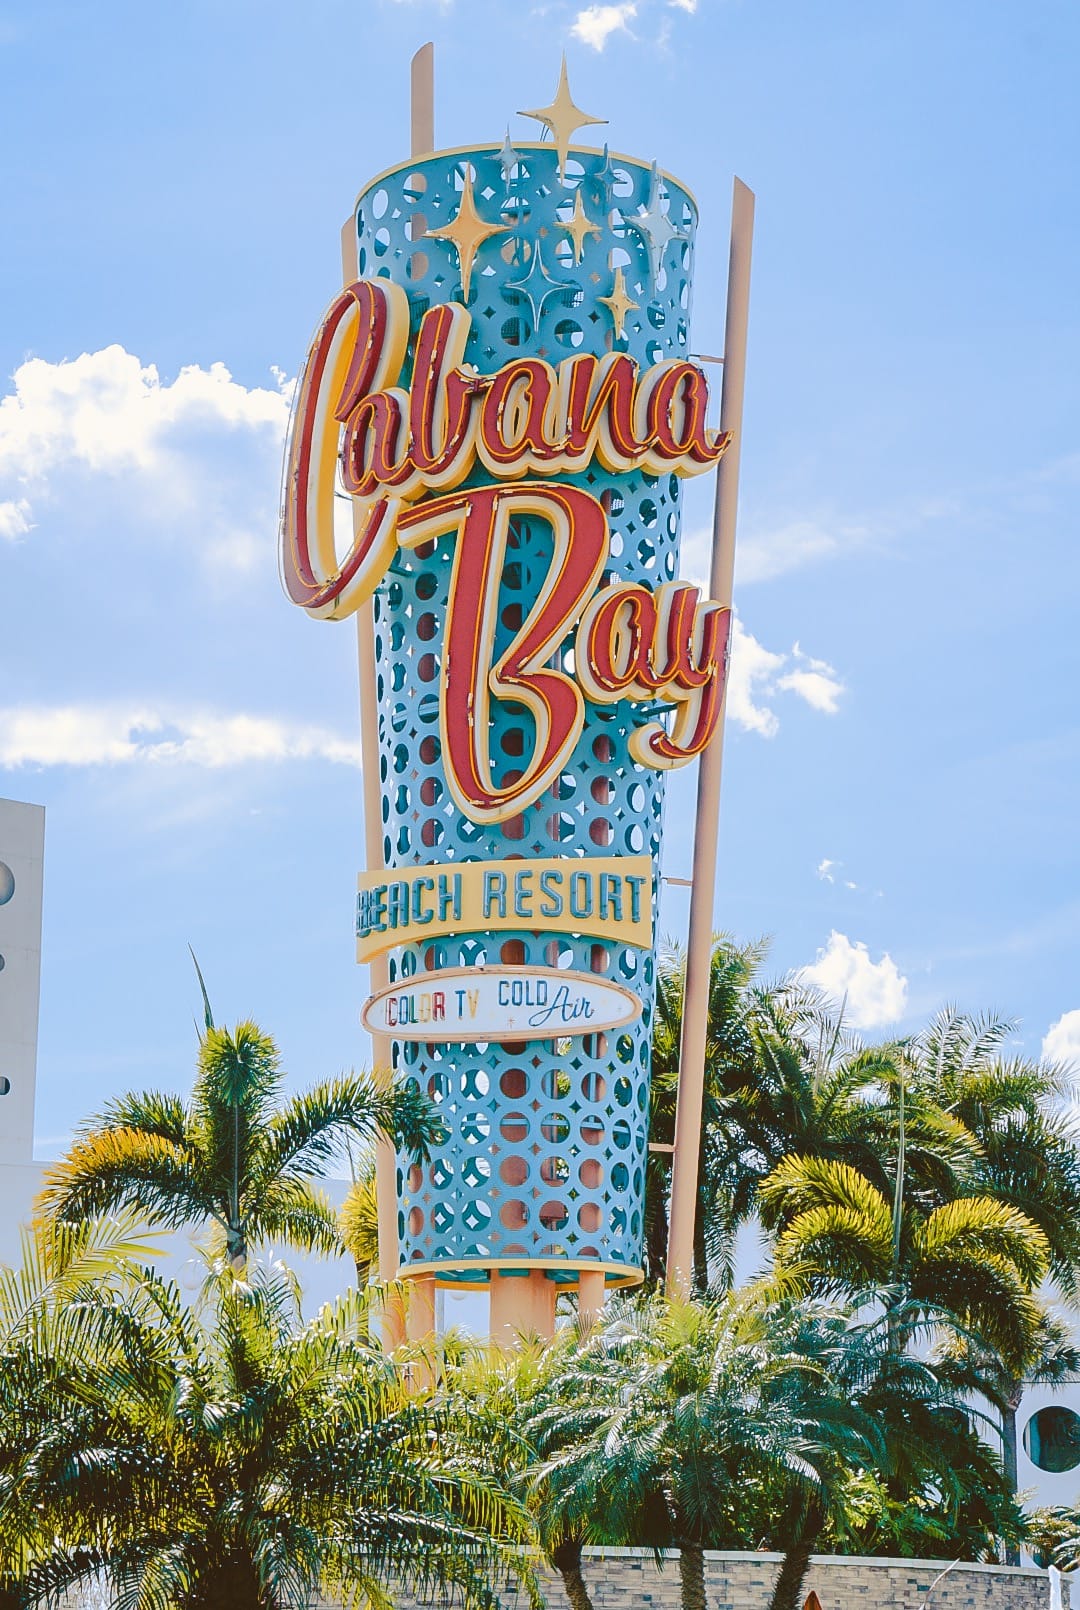 cabana bay beach resort universal Orlando